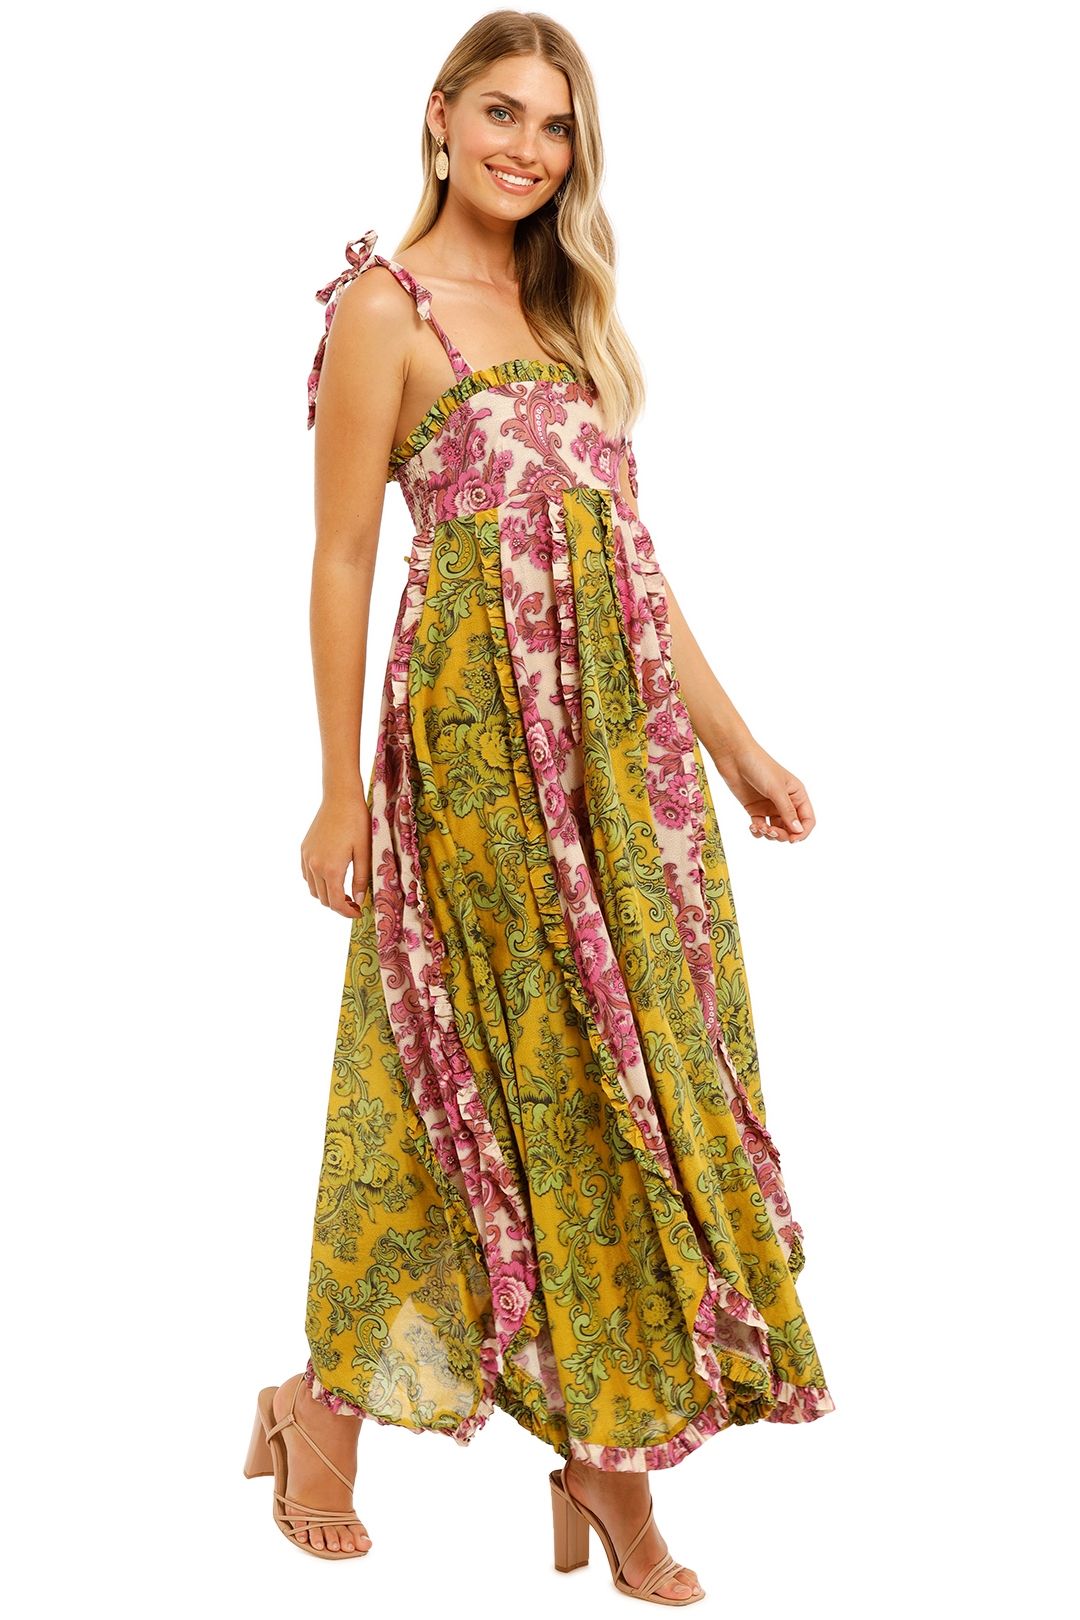 Alemais Rosette Swirl Dress Magenta Lime Full Skirt